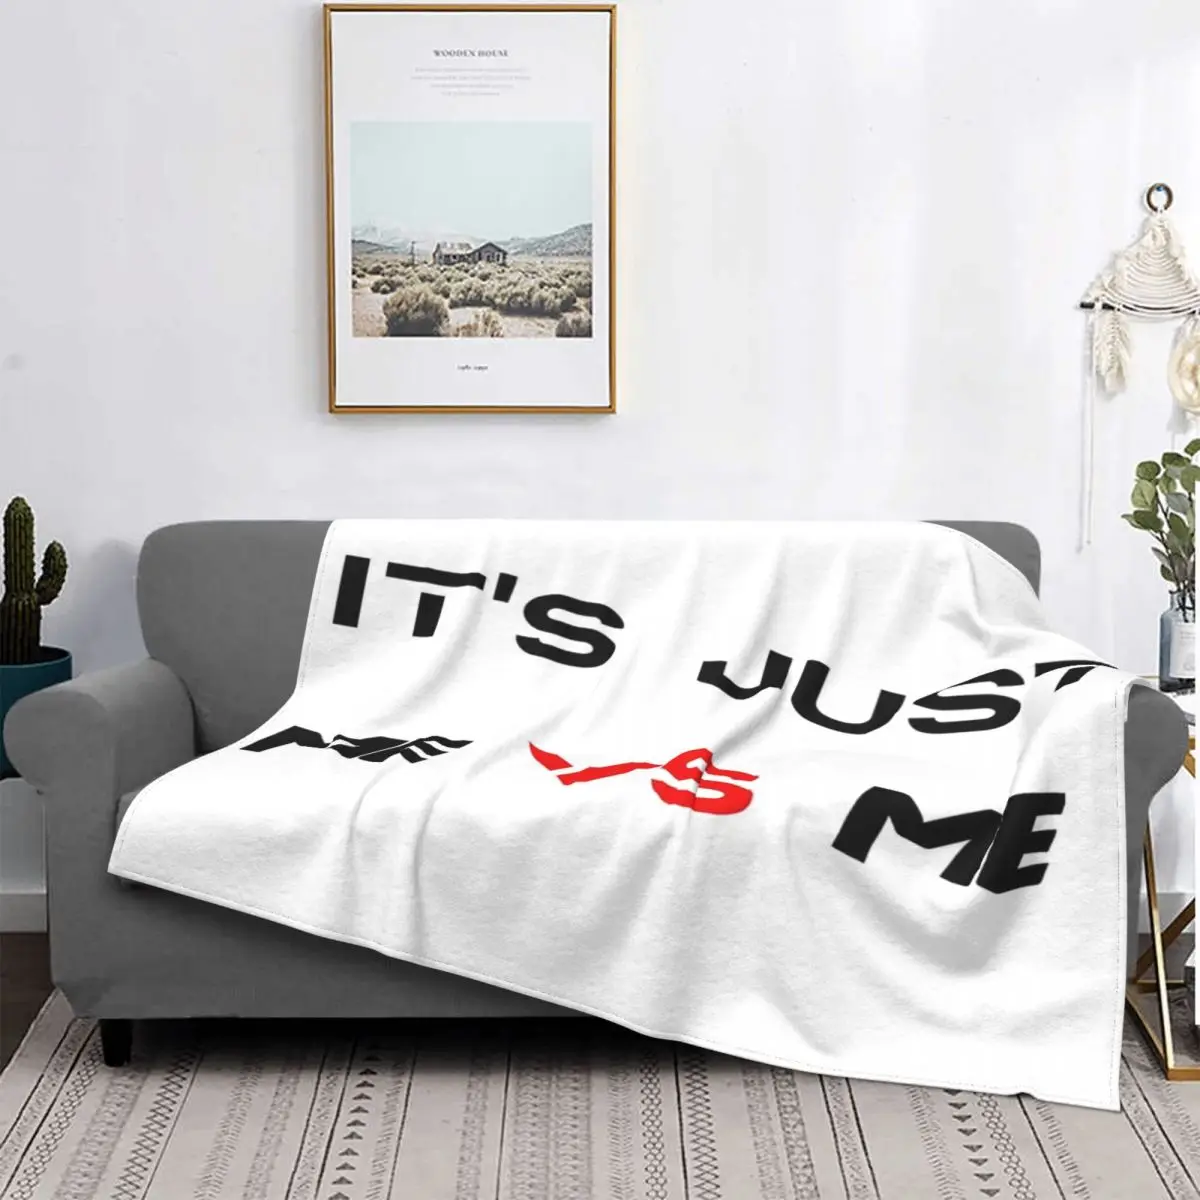 

Manta de muselina a cuadros para cama, cobertor textil de роскошный для домашнего использования, es Just Me Vs Me